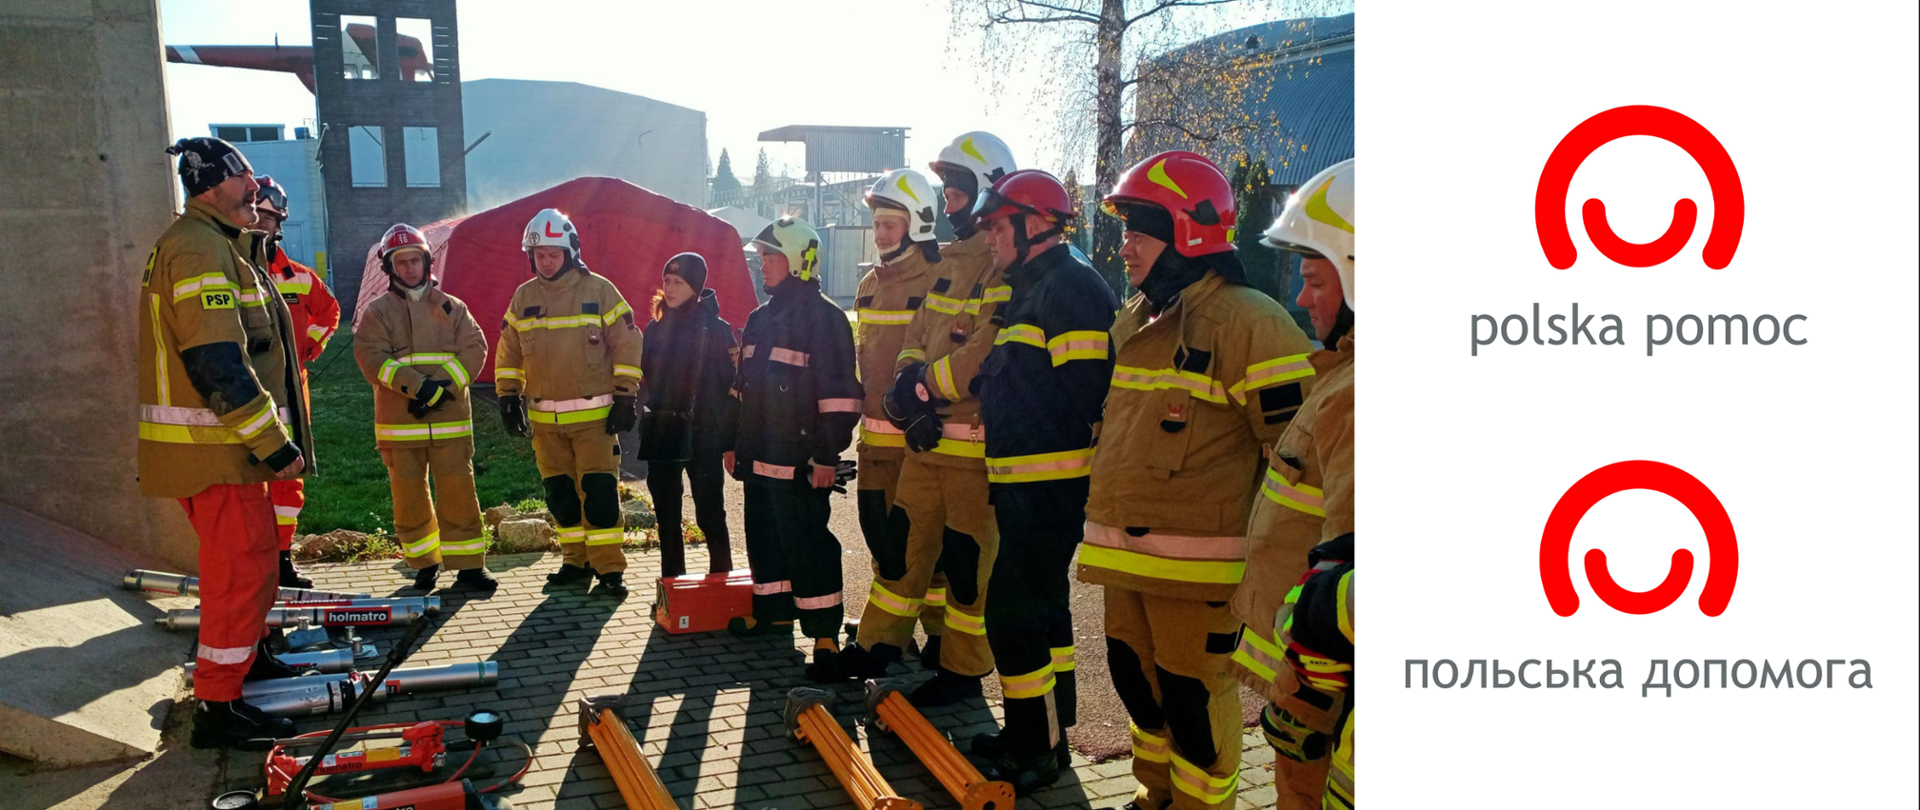 Grupa ratowników słucha wykładu prowadzącego zajęcia, przed nimi rozłożone są na ziemi elementy sprzętu ratowniczego. Po prawo logo polskiej pomocy w języku polskim i ukraińskim